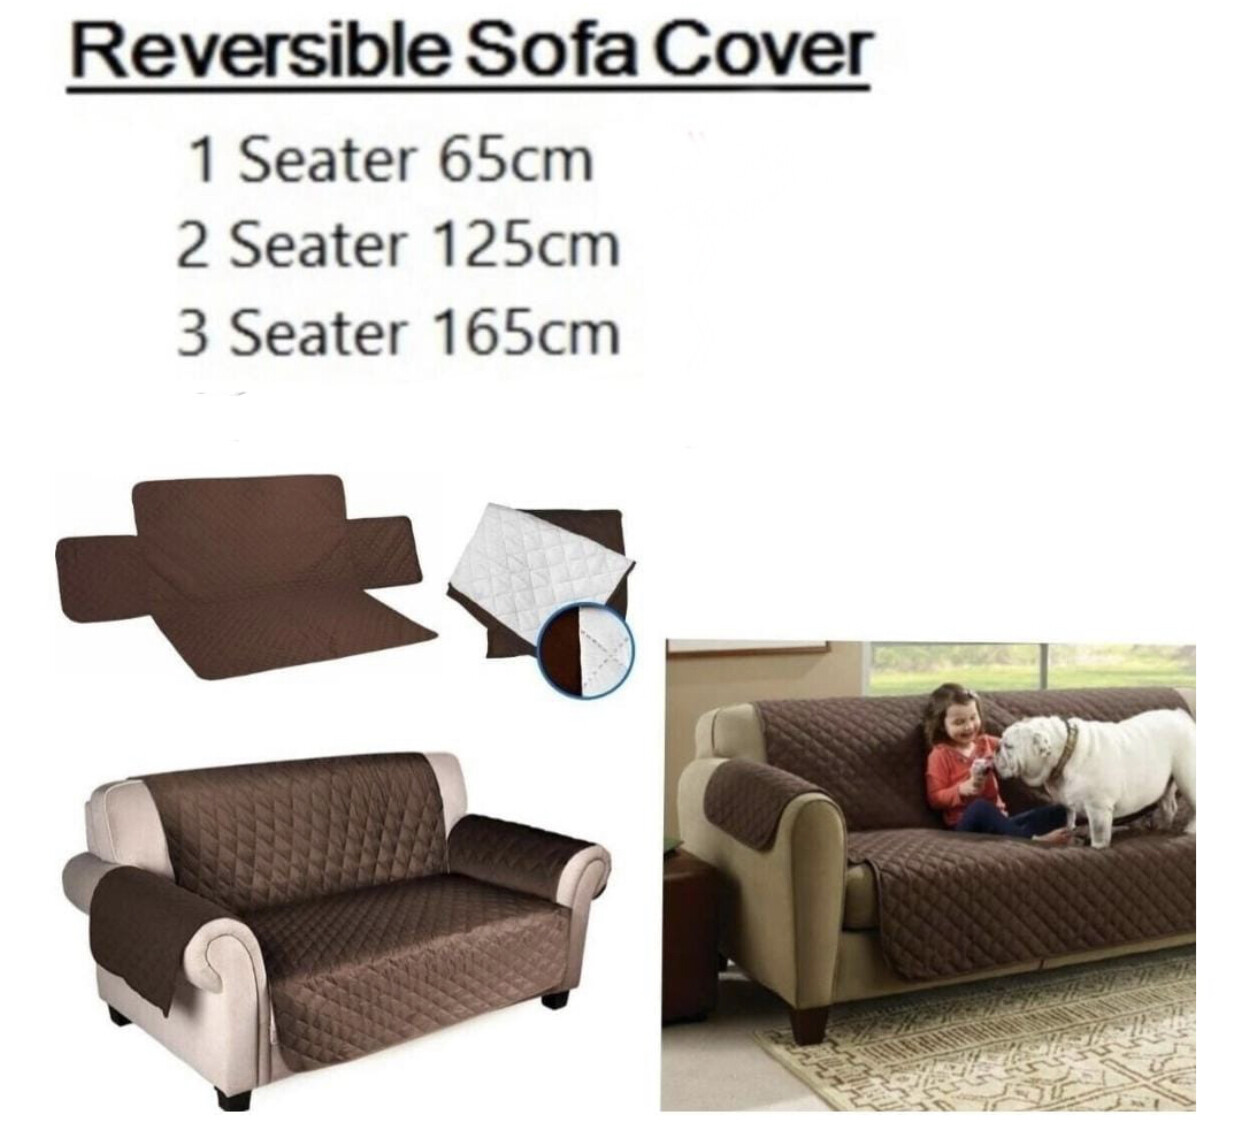 Reversible Sofa Cover*